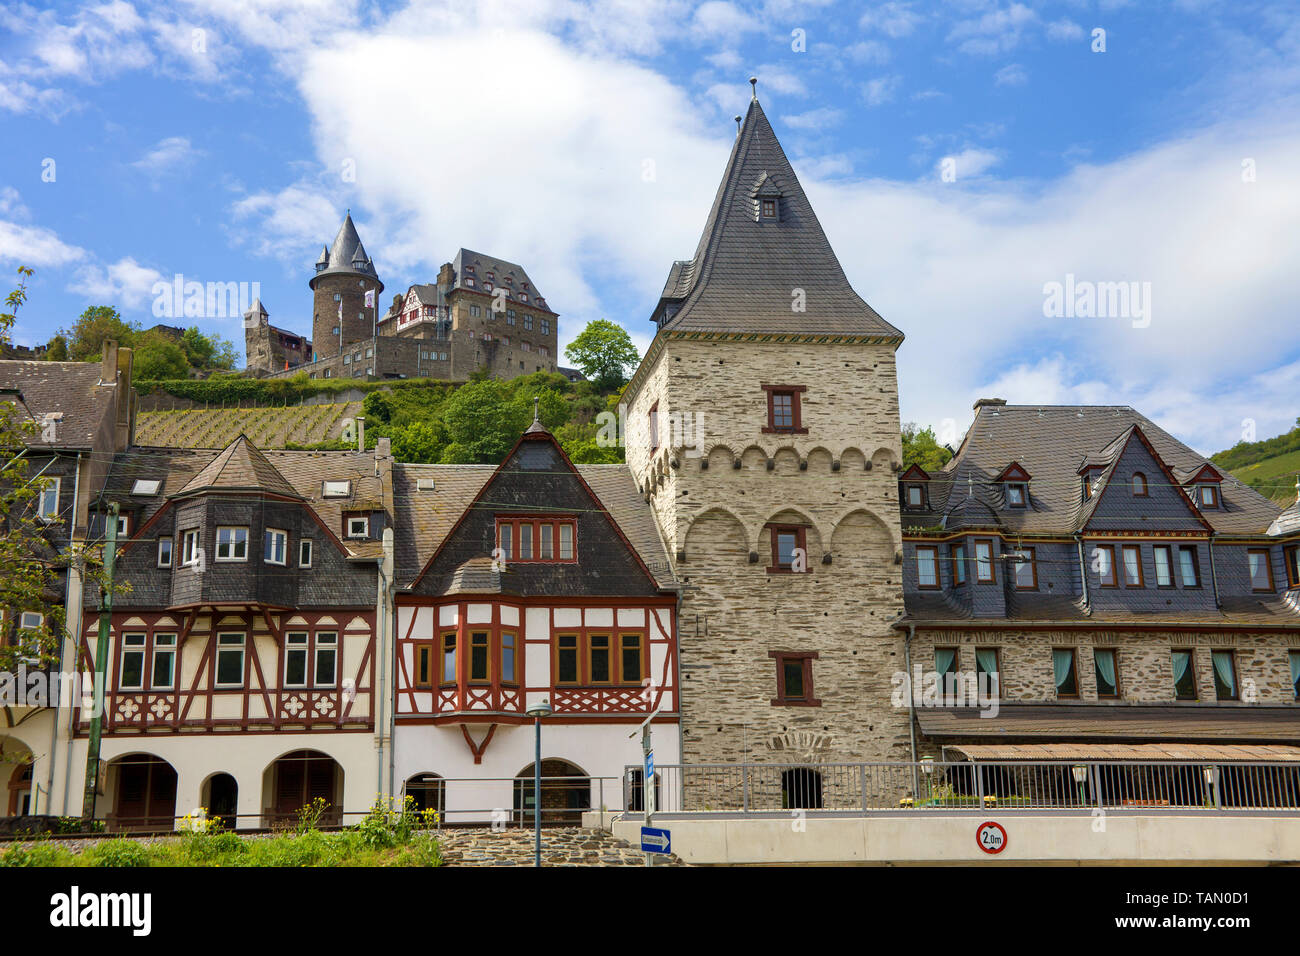 Historische Reihe von Fachwerkhäusern, oberhalb der Burg Stahleck, Bacharach, Oberes Mittelrheintal, Rheinland-Pfalz, Deutschland Stockfoto